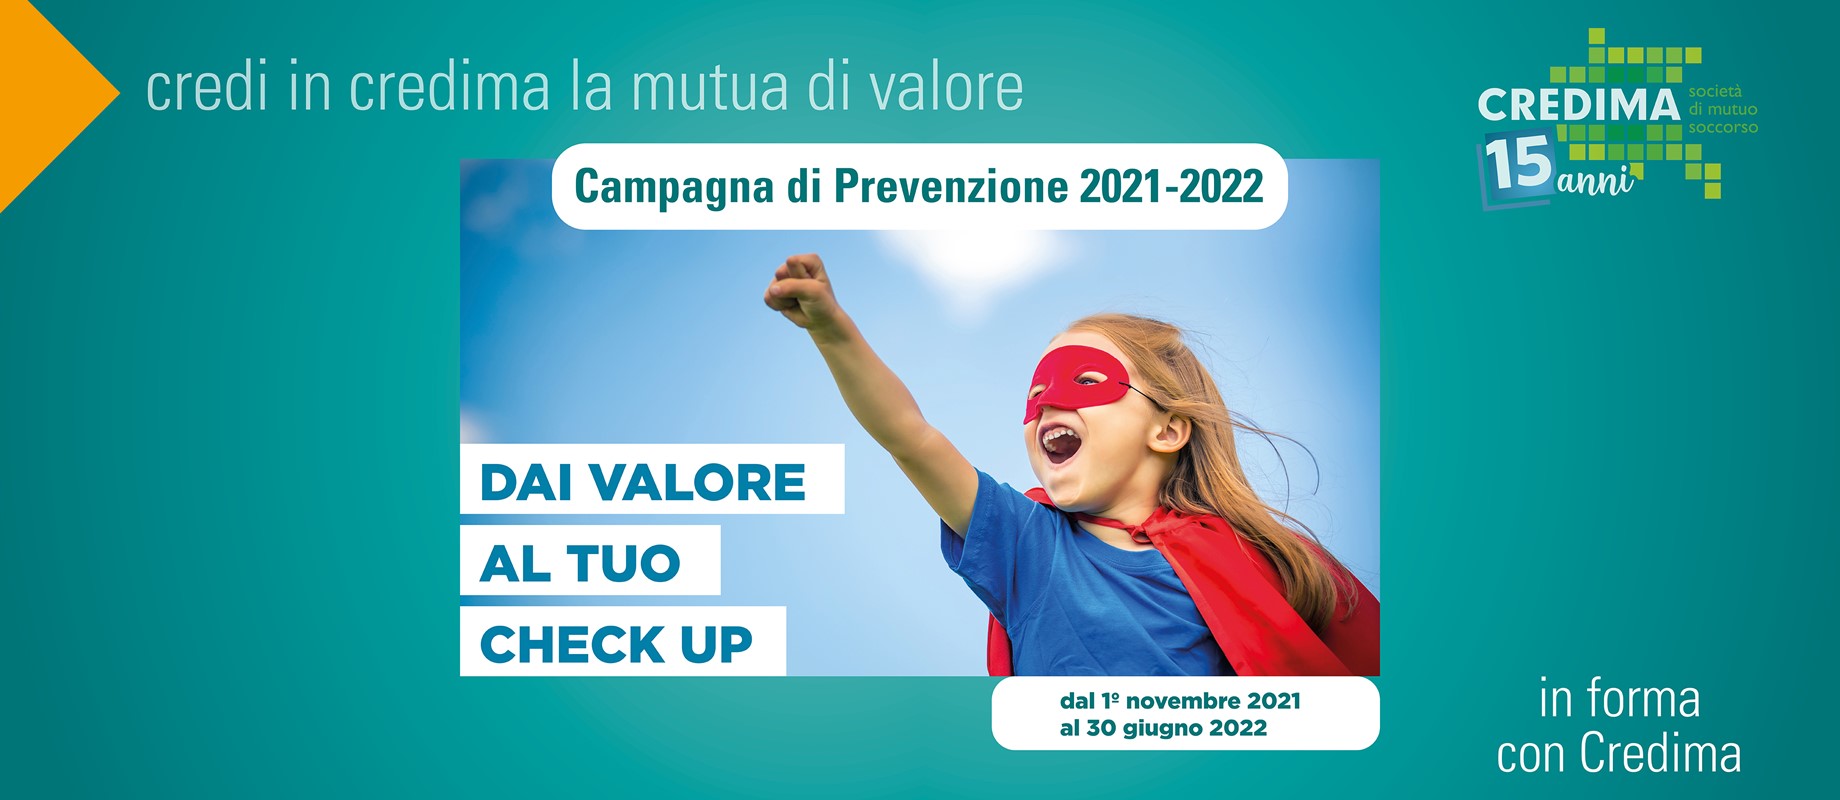 Campagna di Prevenzione Check up 2021-2022 